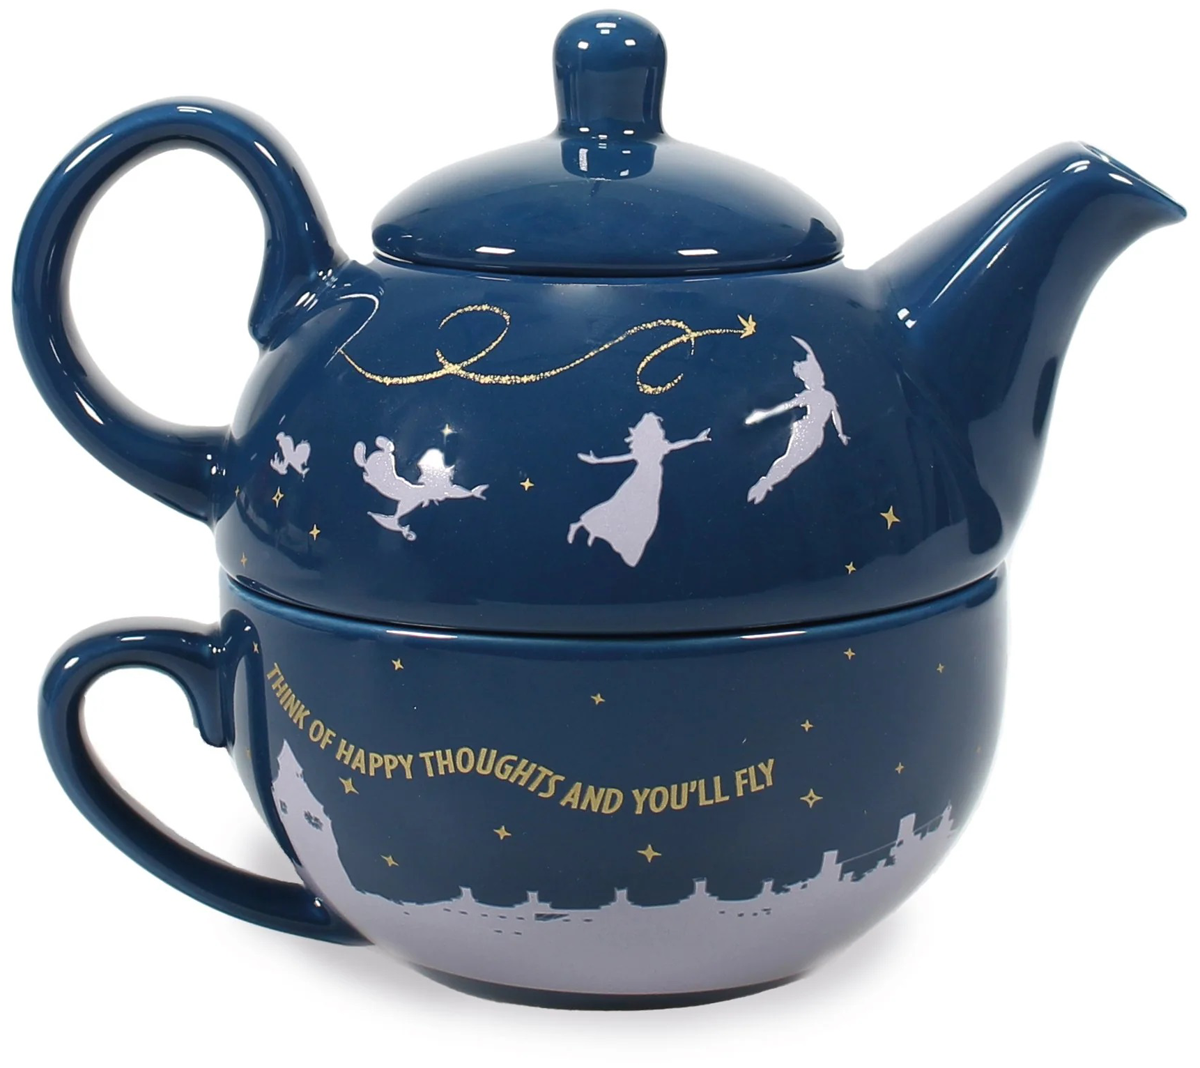 Peter Pan - Tea For One - Teekanne - multicolor